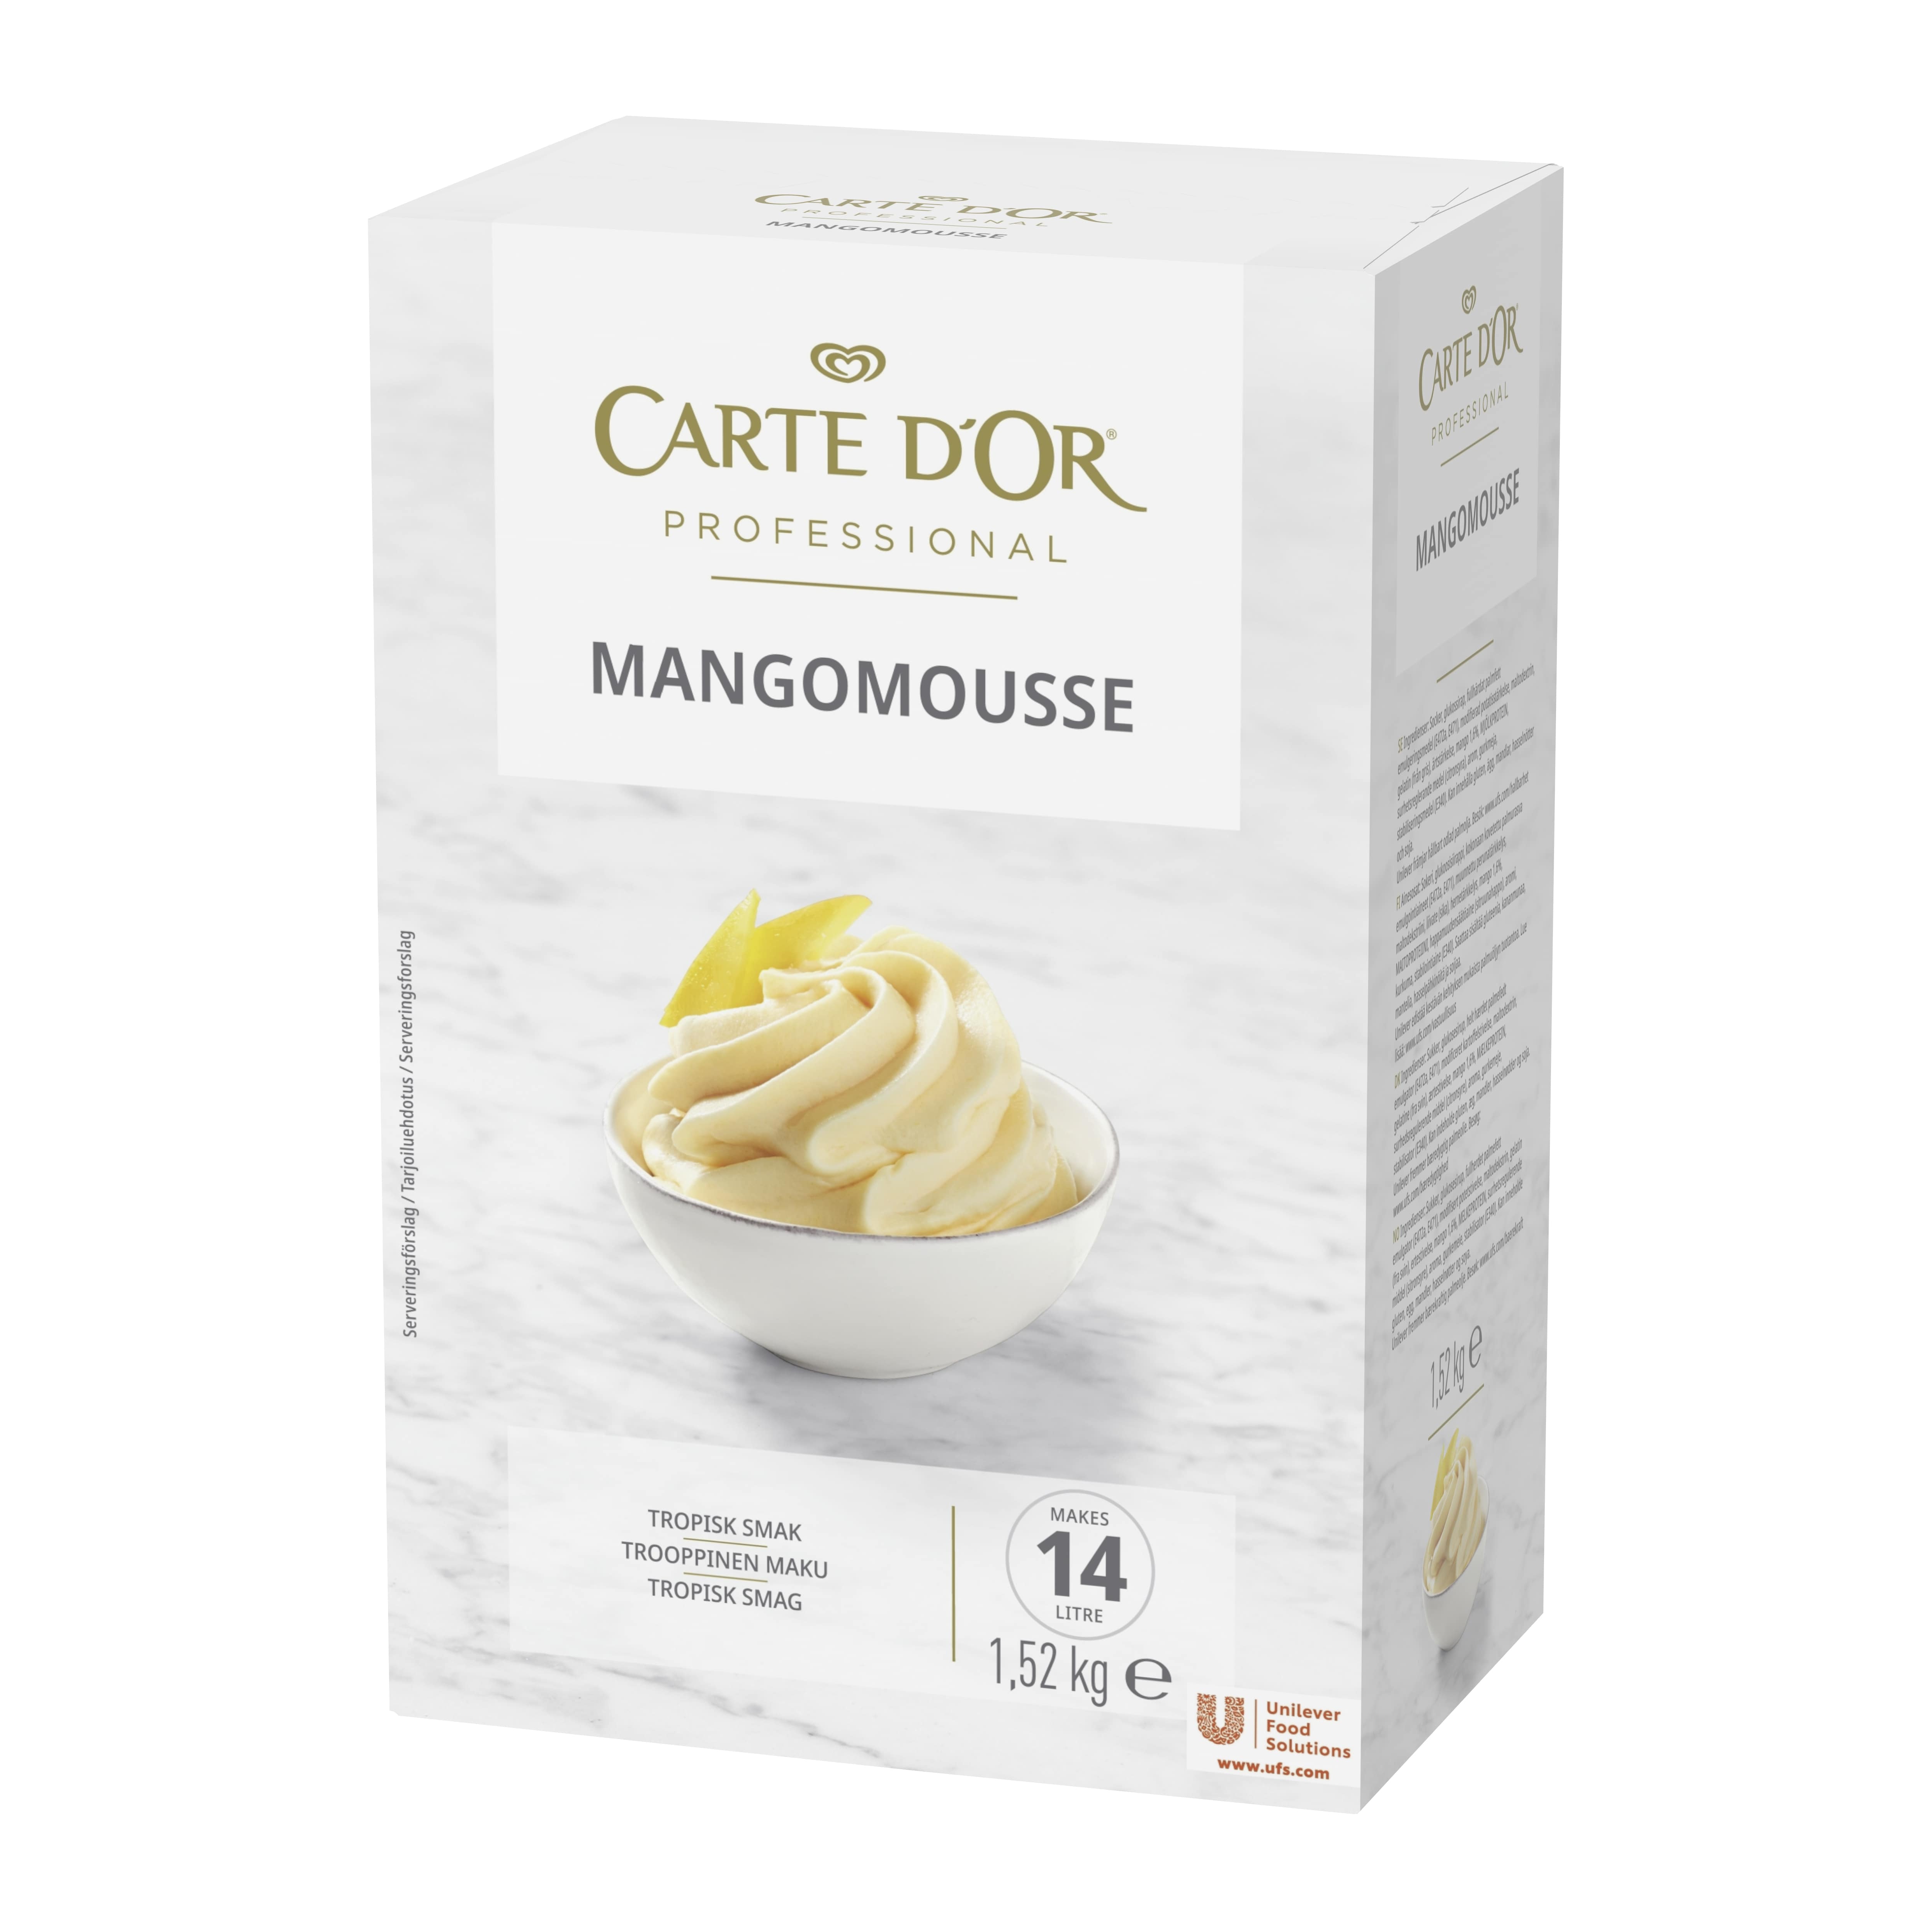 Carte d'Or Mangomousse 1,52 kg / 14 L